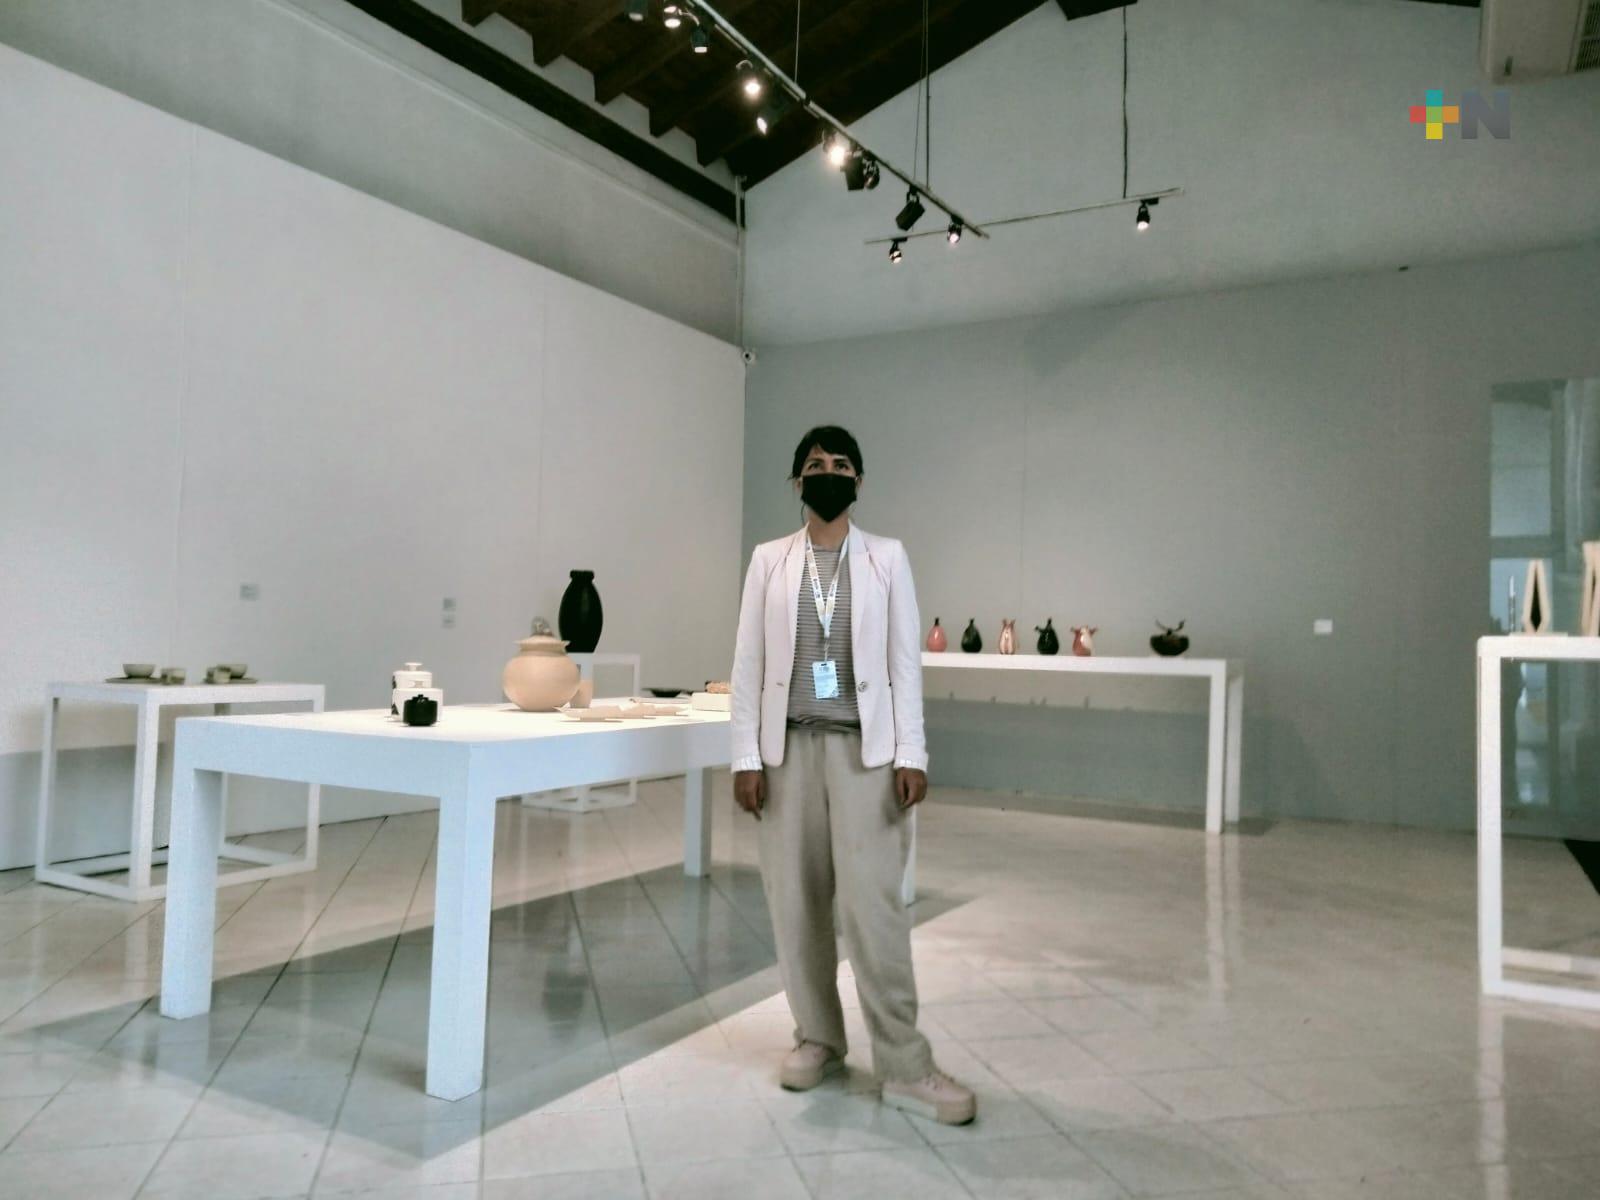 Galería de Arte Contemporáneo Xalapa continúa con actividades presenciales  